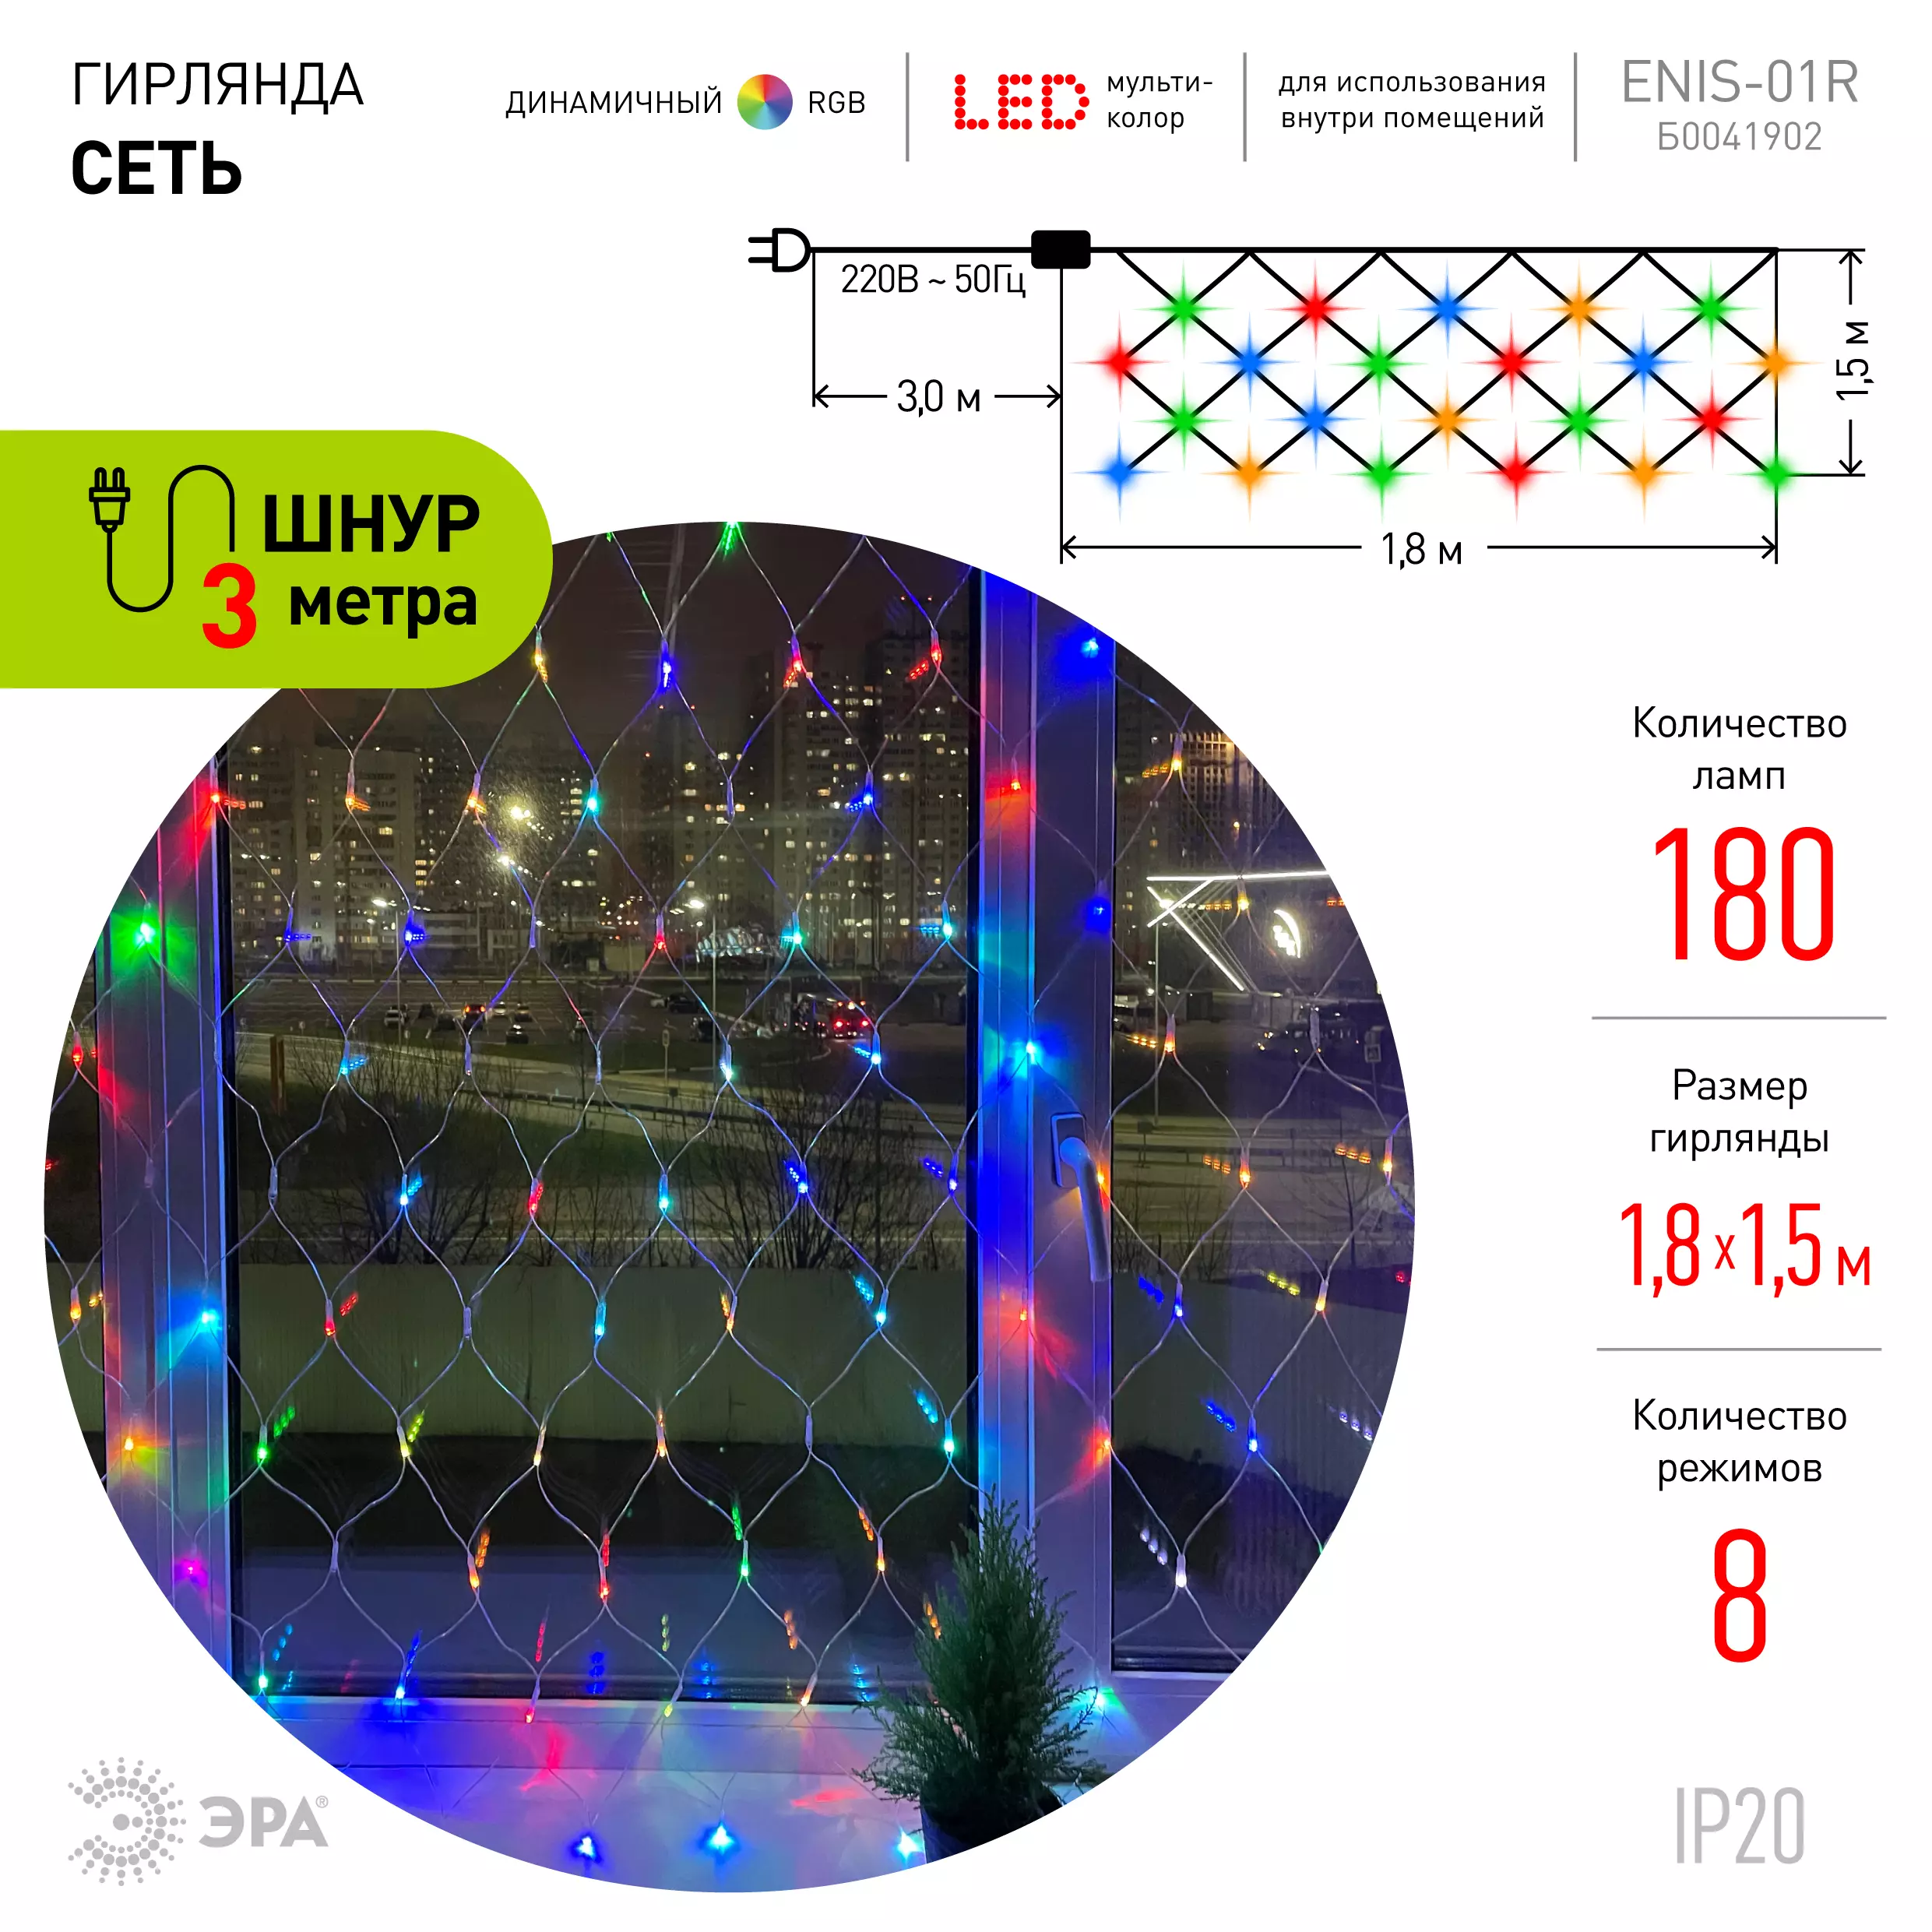 Гирлянда LED Сеть 1,8 м*1,5 м RGB, 220V, IP20 ENIS-01R ЭРА